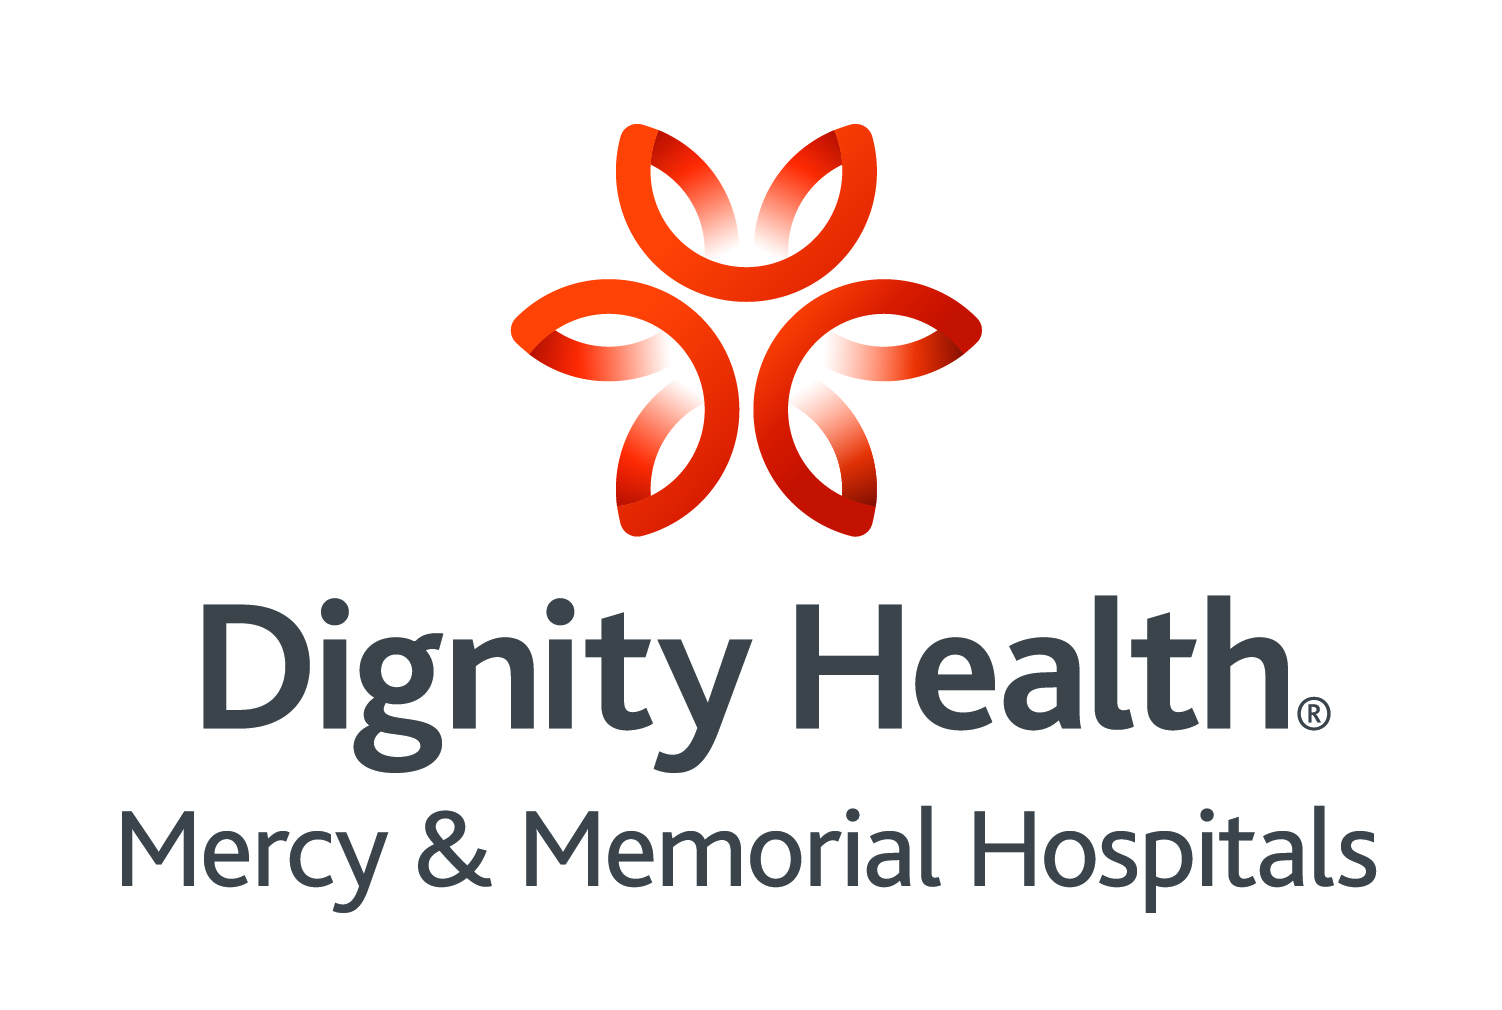 1. Dignity Health (presentación)